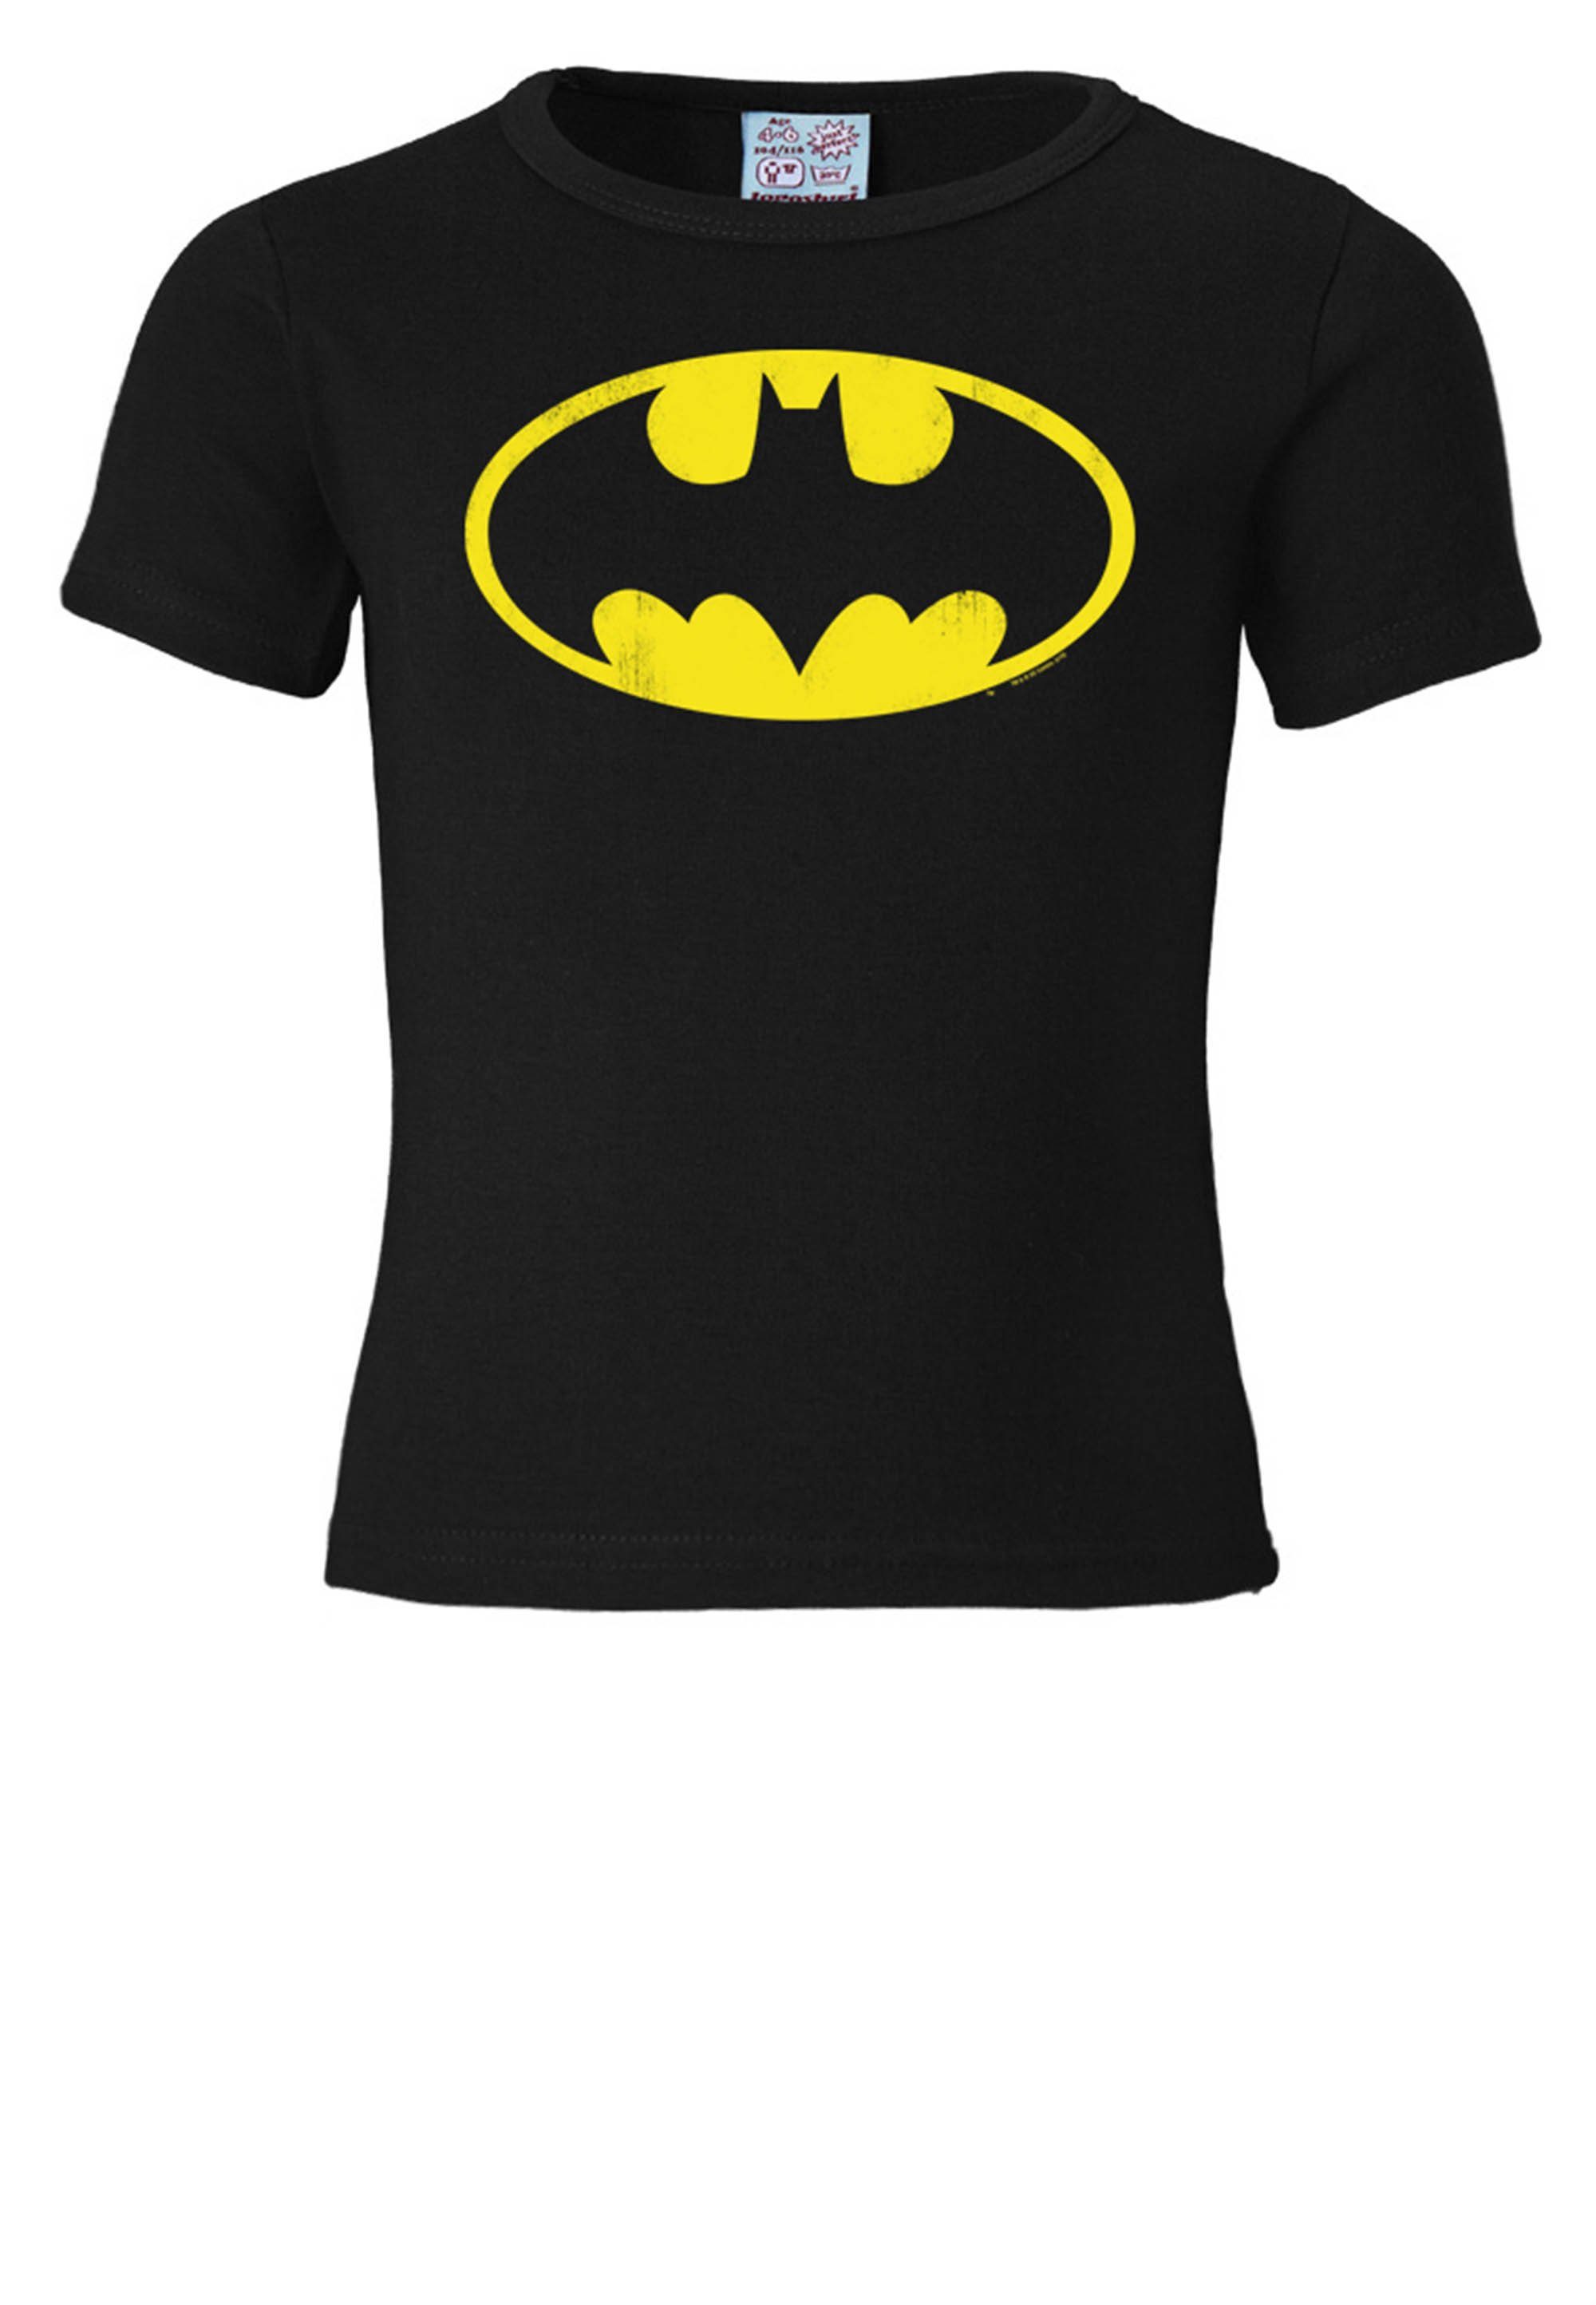 T-Shirt Logo-Druck mit Batman Superhelden LOGOSHIRT